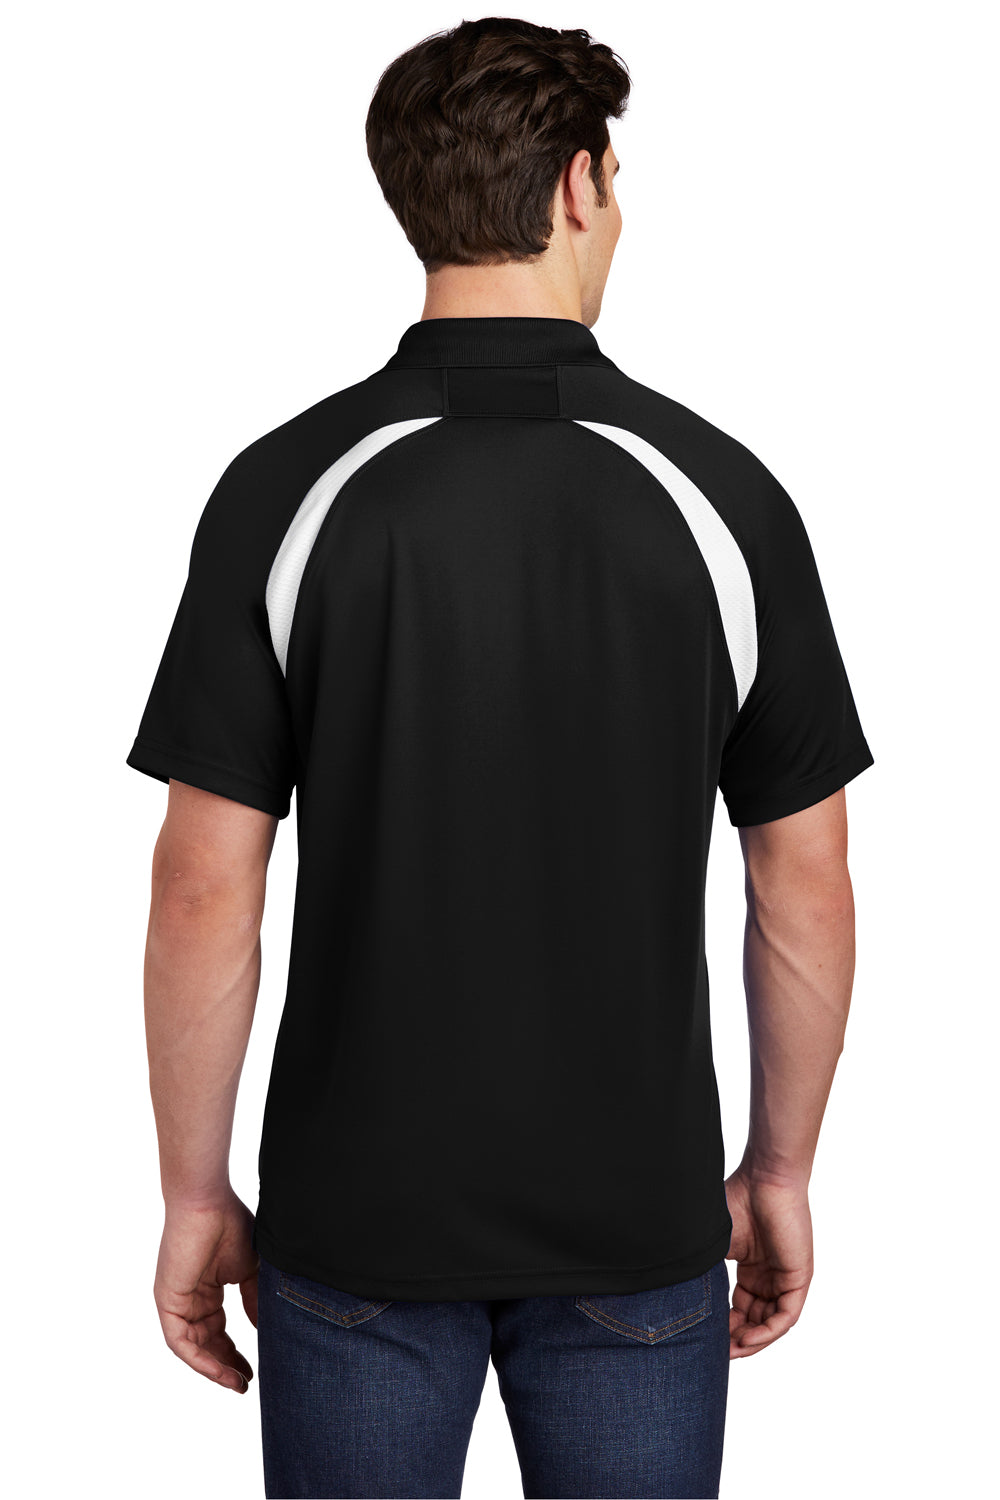 Sport-Tek T476 Mens Dry Zone Moisture Wicking Short Sleeve Polo Shirt Black Back